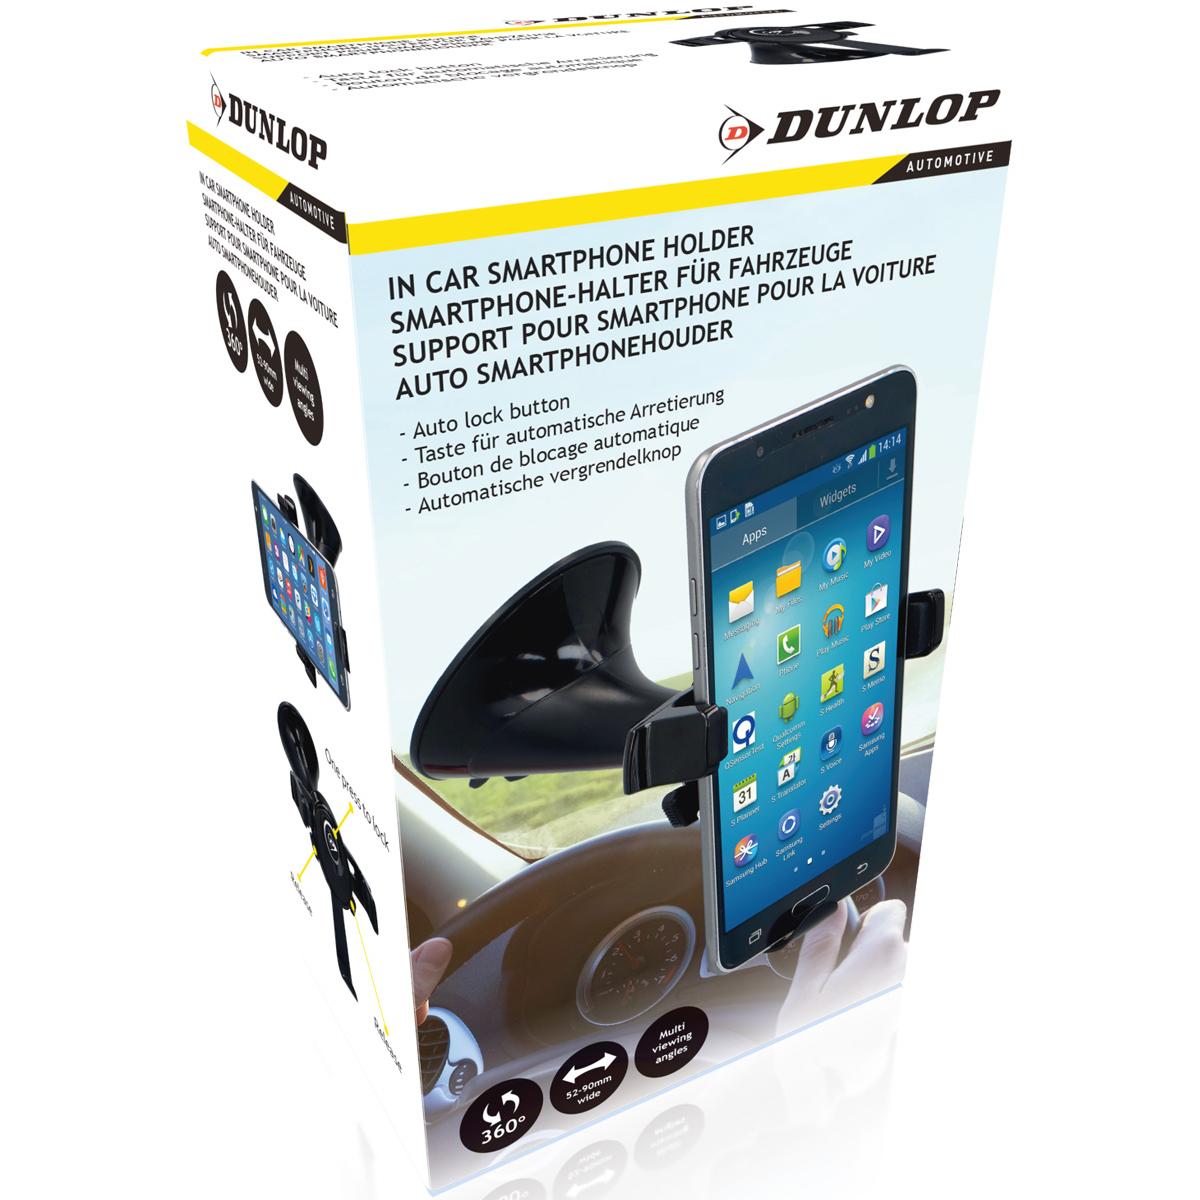 Support pour smartphone pour la voiture de DUNLOP + Mat antidérapant de  DUNLOP – Inforad